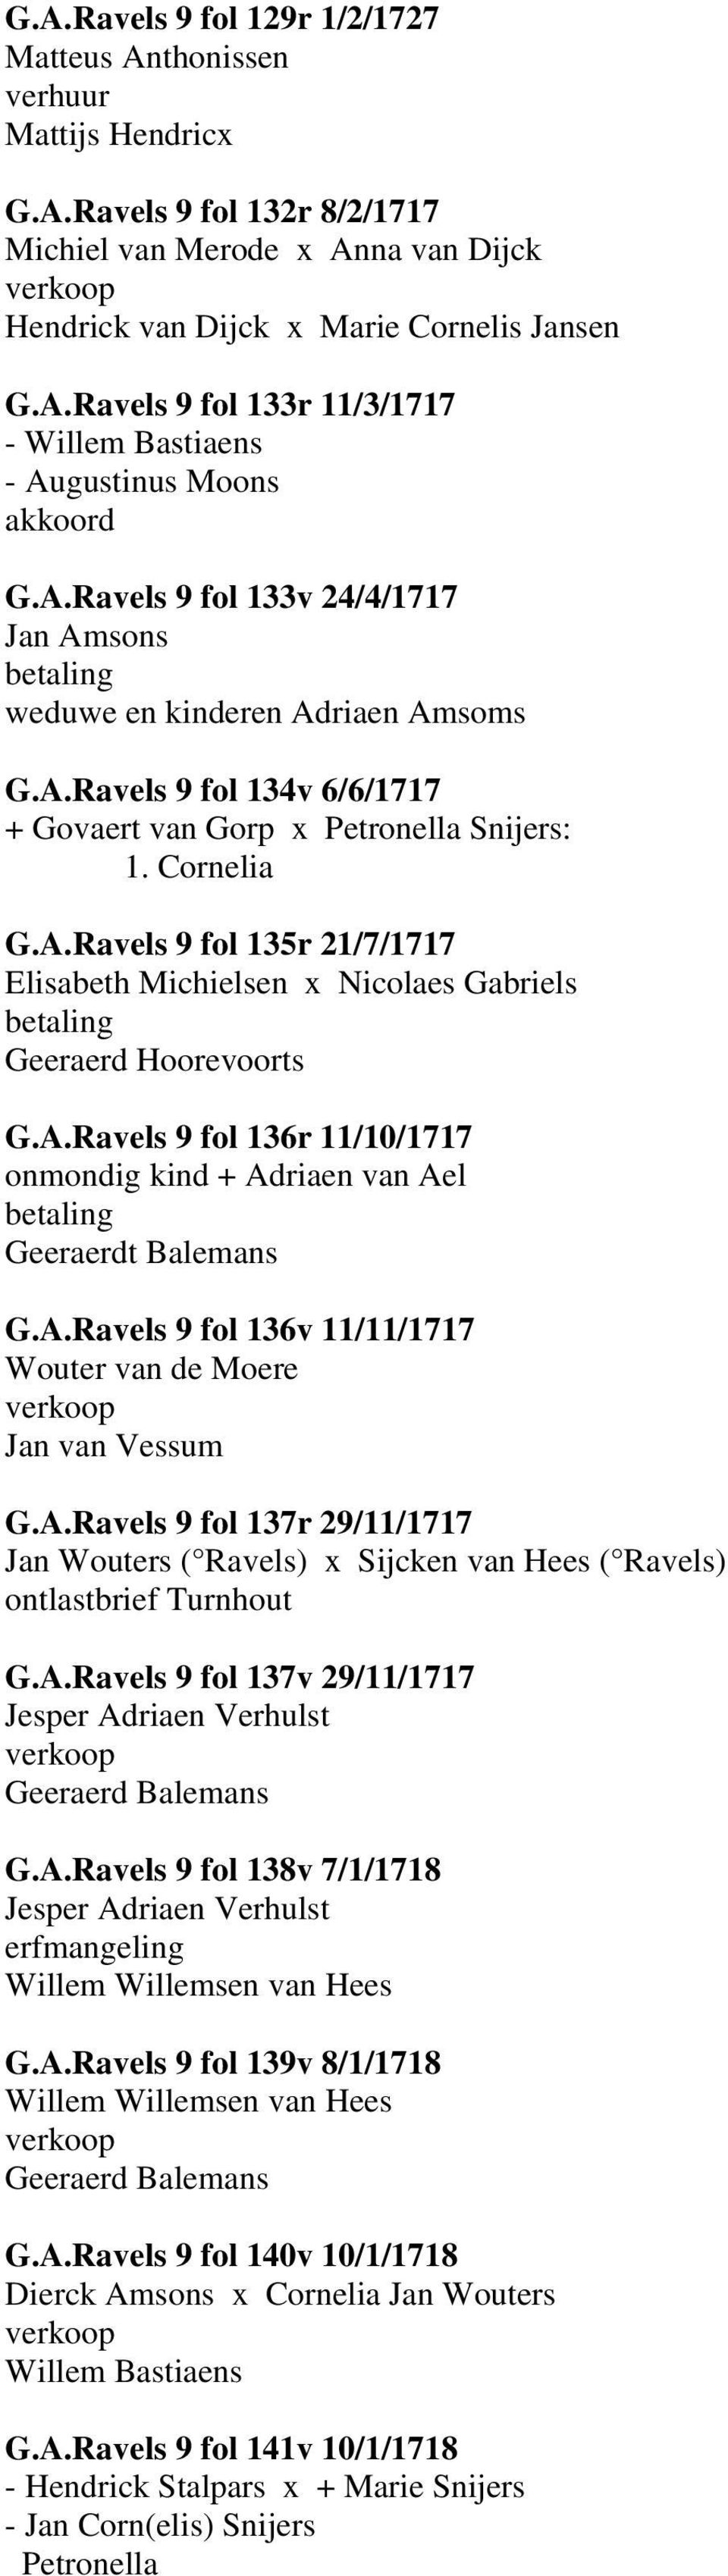 A.Ravels 9 fol 136r 11/10/1717 onmondig kind + Adriaen van Ael Geeraerdt Balemans G.A.Ravels 9 fol 136v 11/11/1717 Wouter van de Moere Jan van Vessum G.A.Ravels 9 fol 137r 29/11/1717 Jan Wouters ( Ravels) x Sijcken van Hees ( Ravels) ontlastbrief Turnhout G.